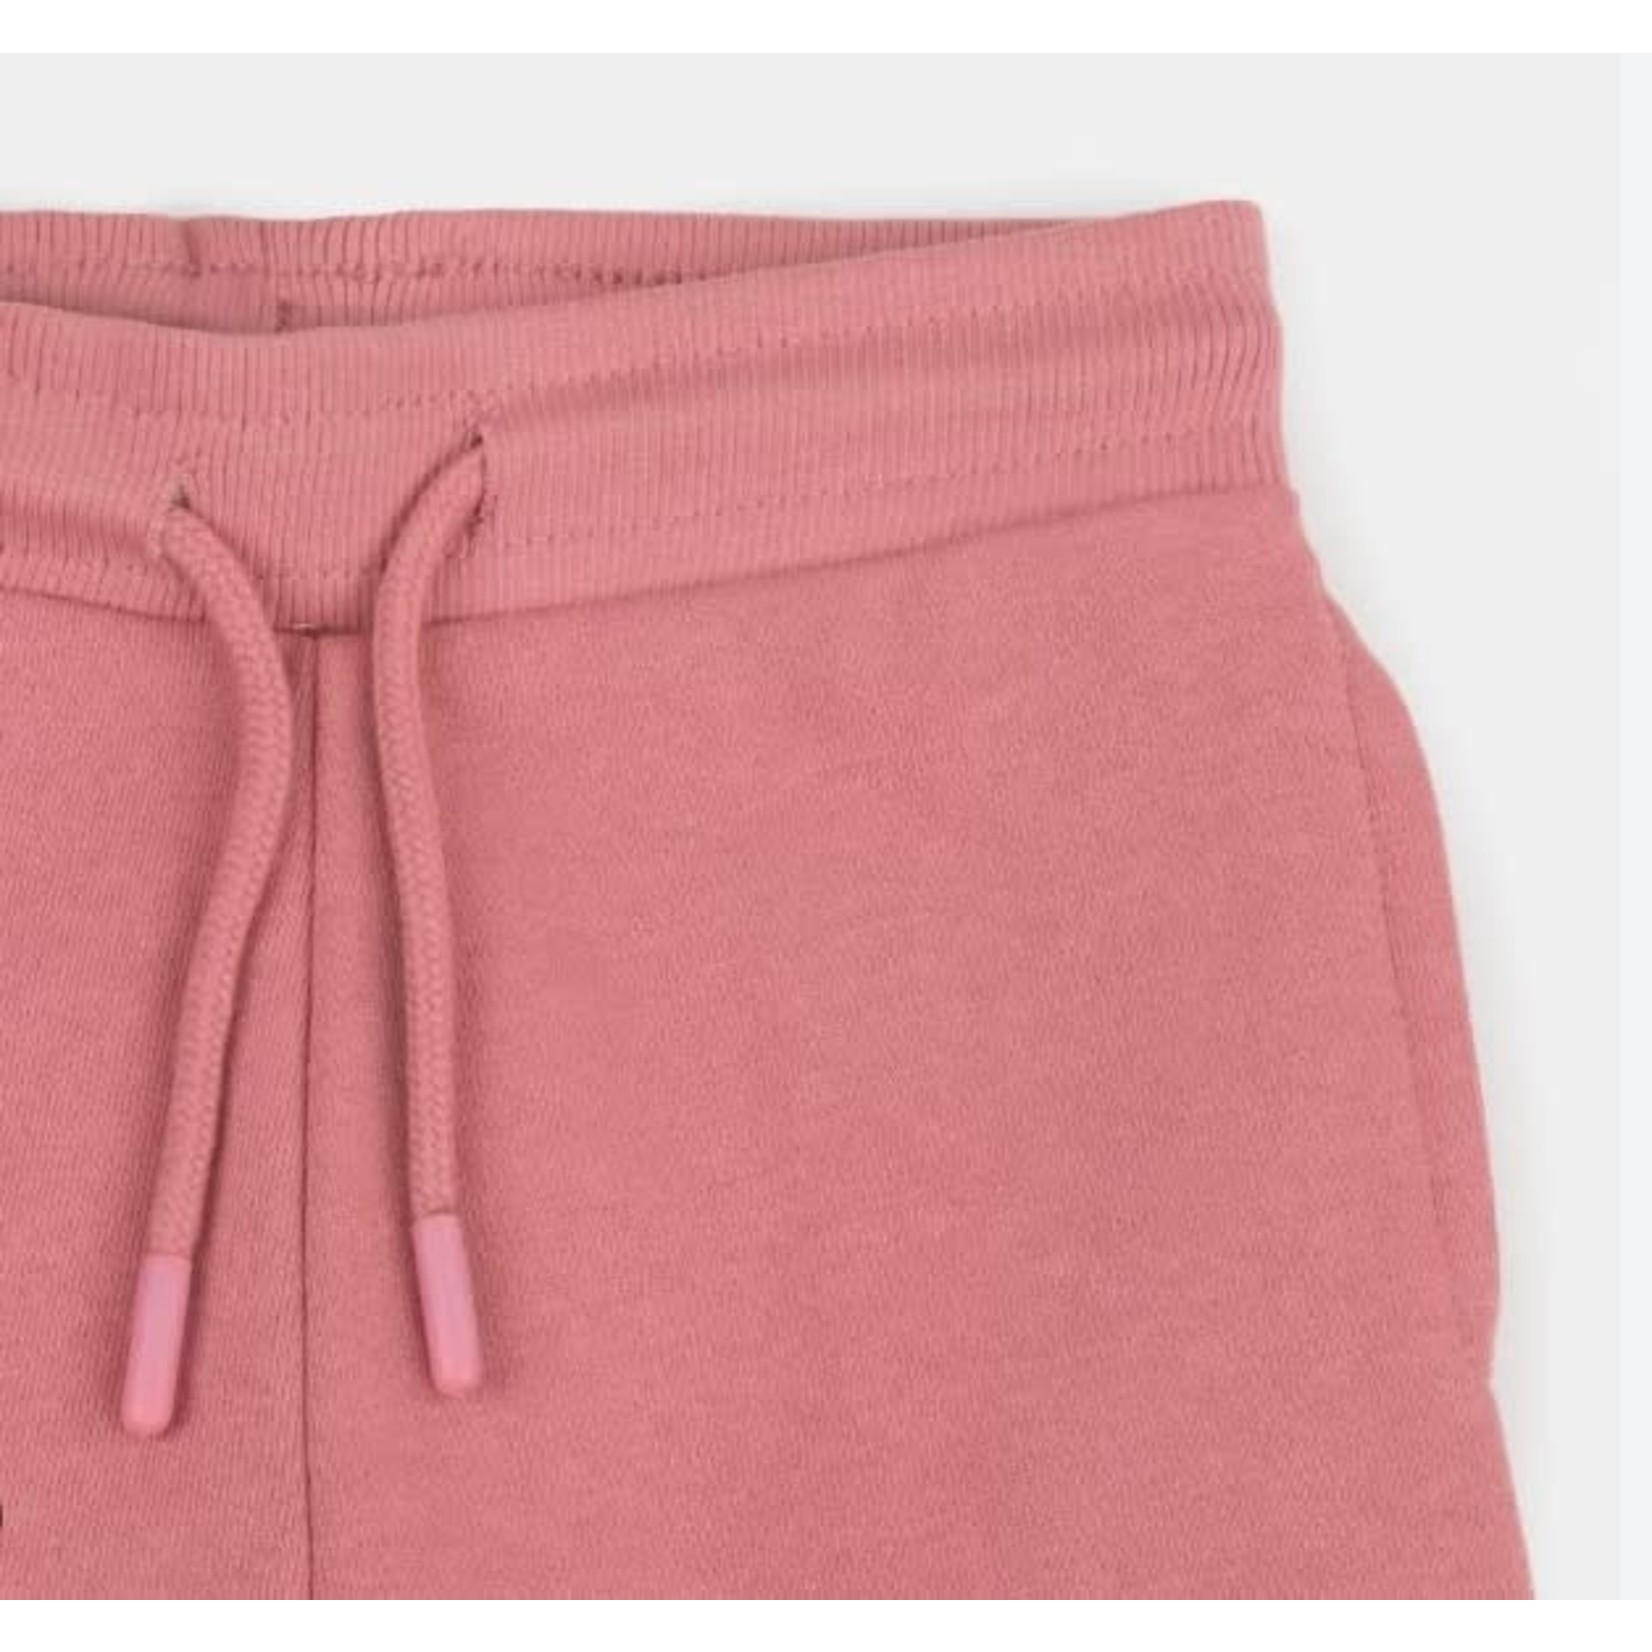 Losan LOSAN - Soft cotton pink jogging pants